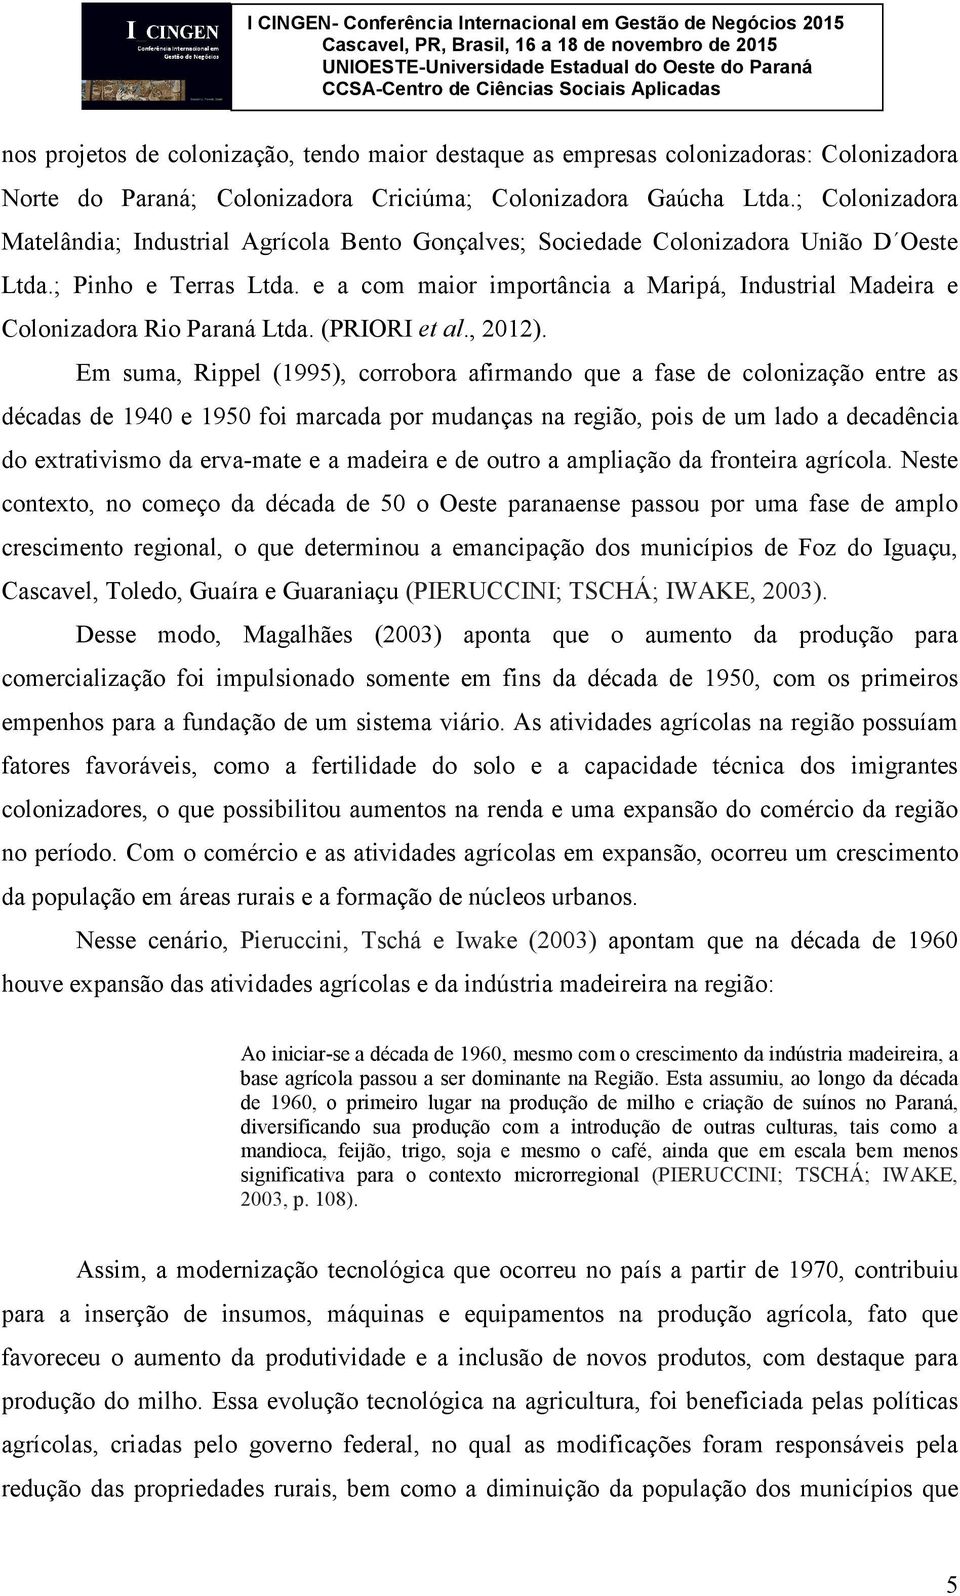 e a com maior importância a Maripá, Industrial Madeira e Colonizadora Rio Paraná Ltda. (PRIORI et al., 2012).